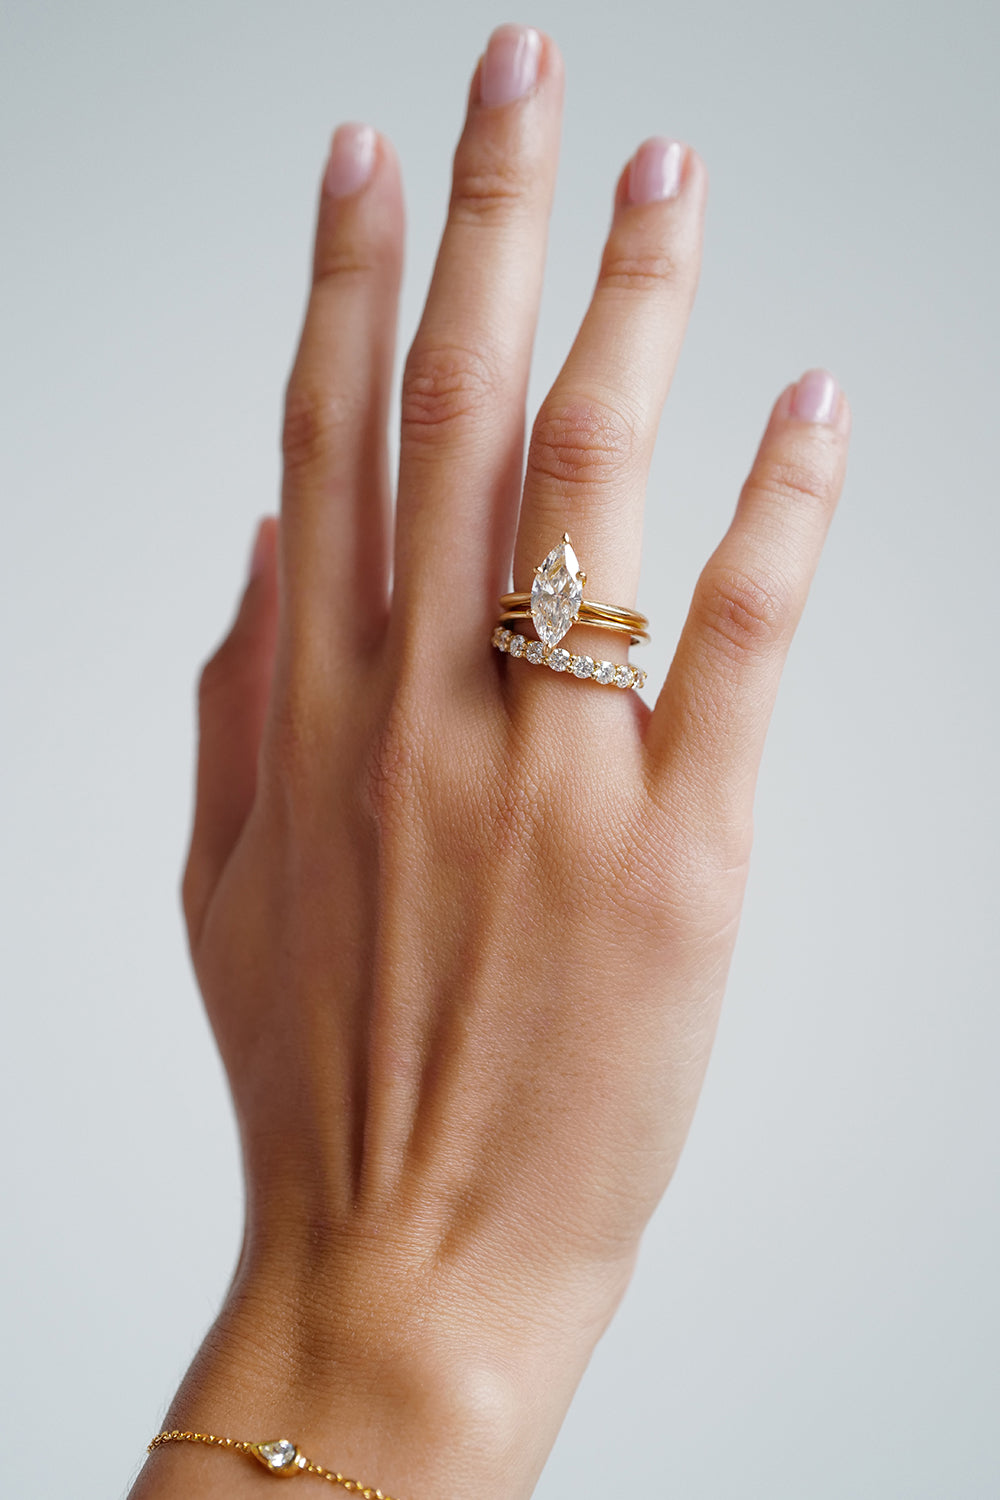 Double Band 10pt Round Diamond Ring | 18K Yellow Gold| Natasha Schweitzer